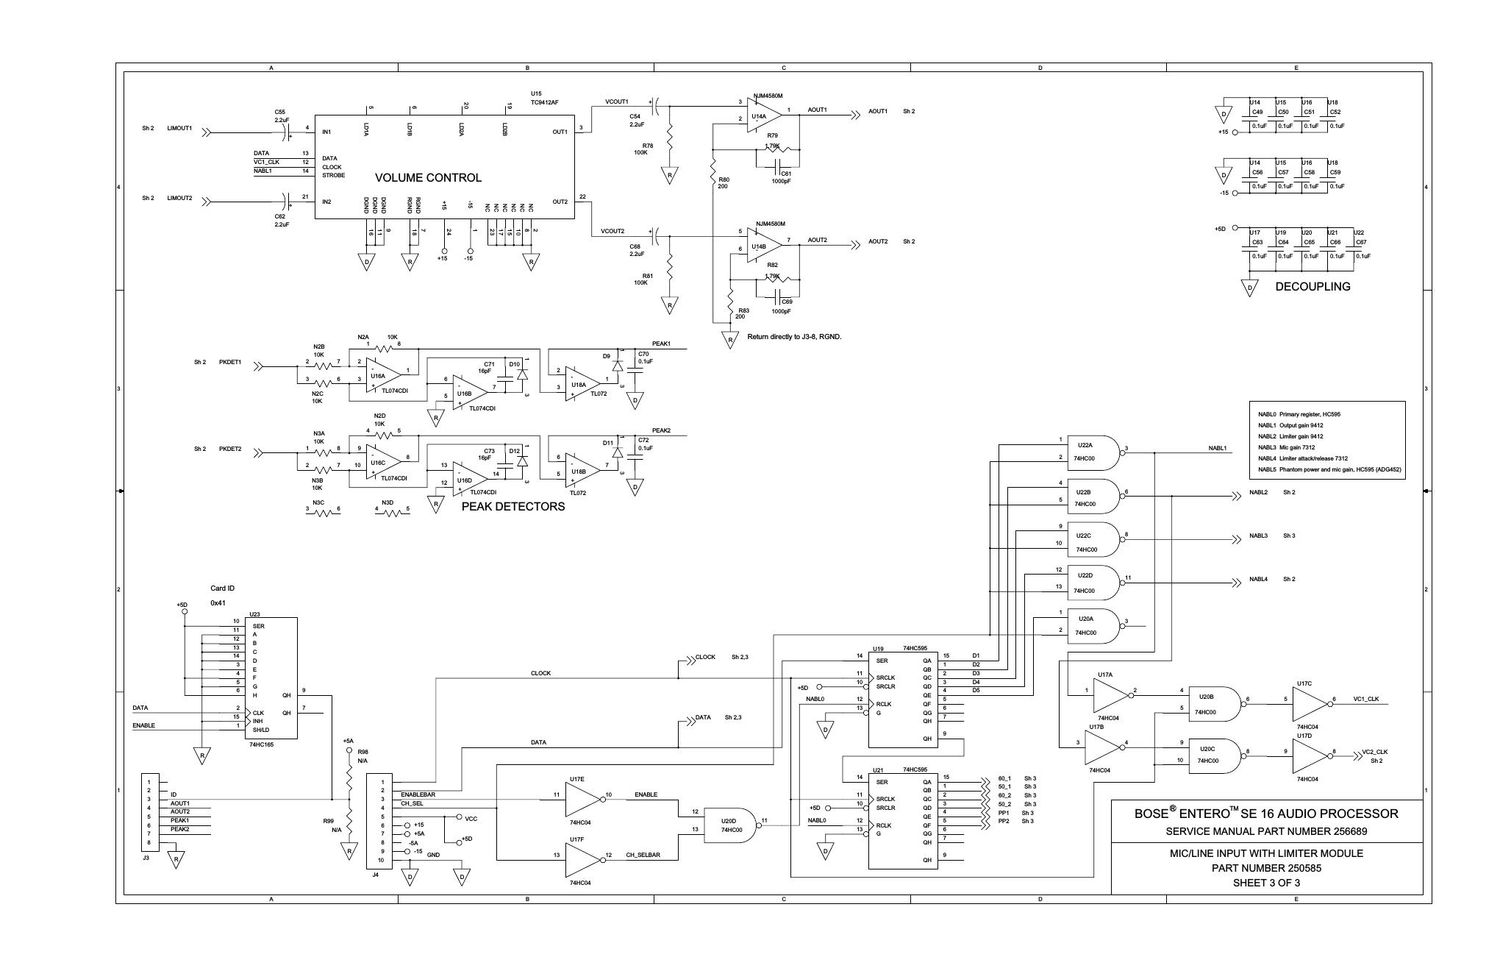 bose entero se16 audio processor 250585 mic line in wlim sht3 schematics